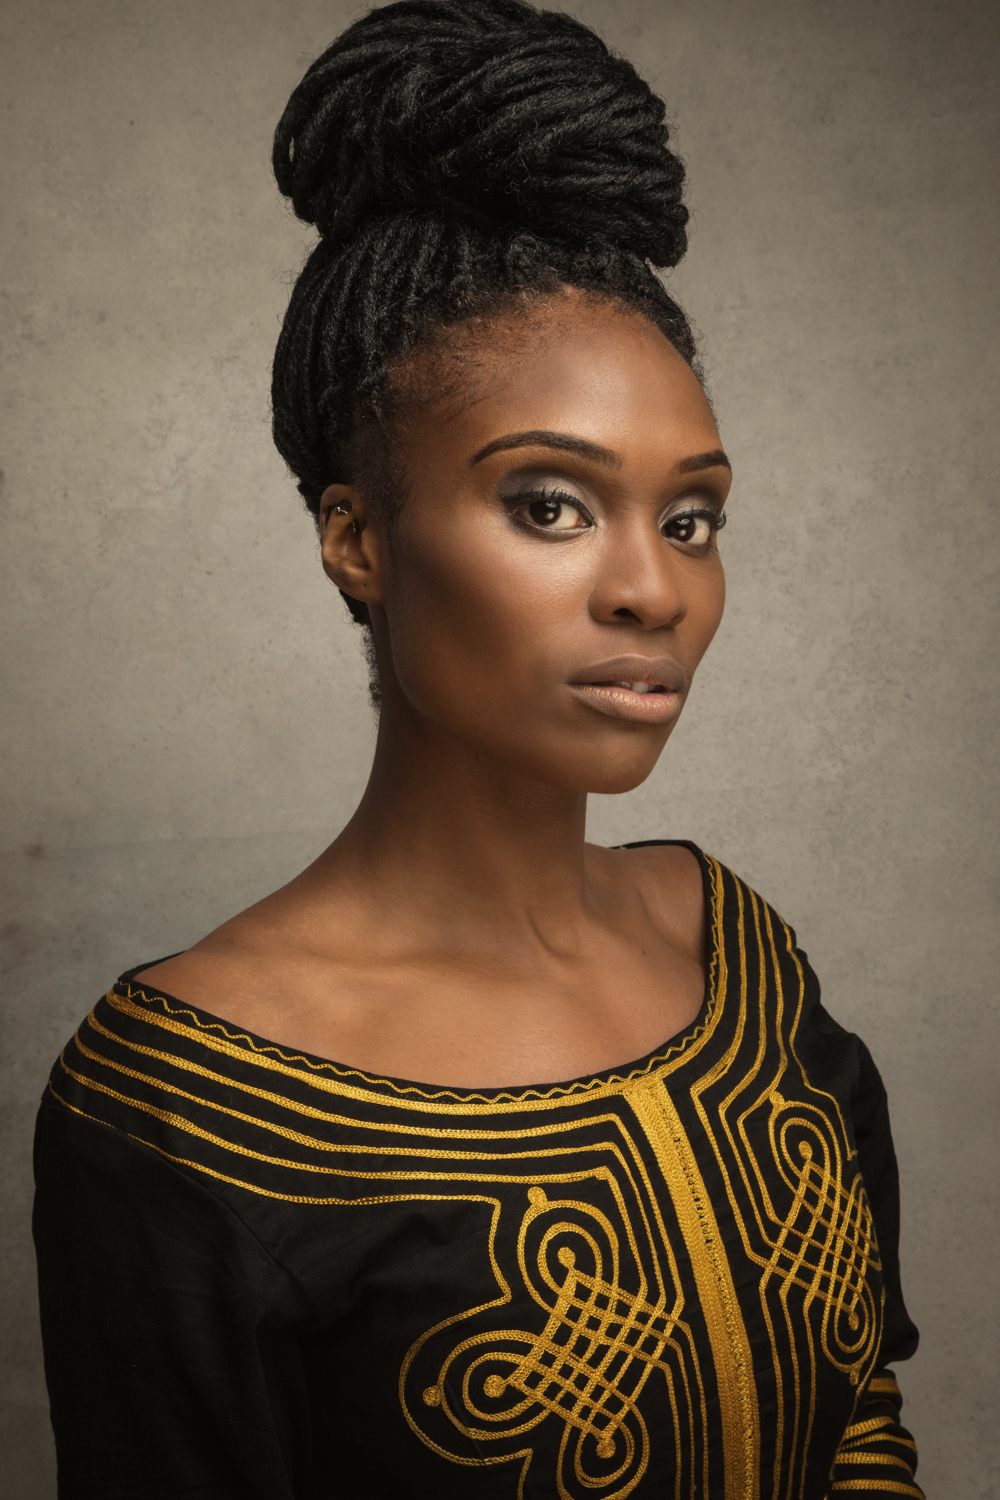 Actress: Ngozi Ugoh